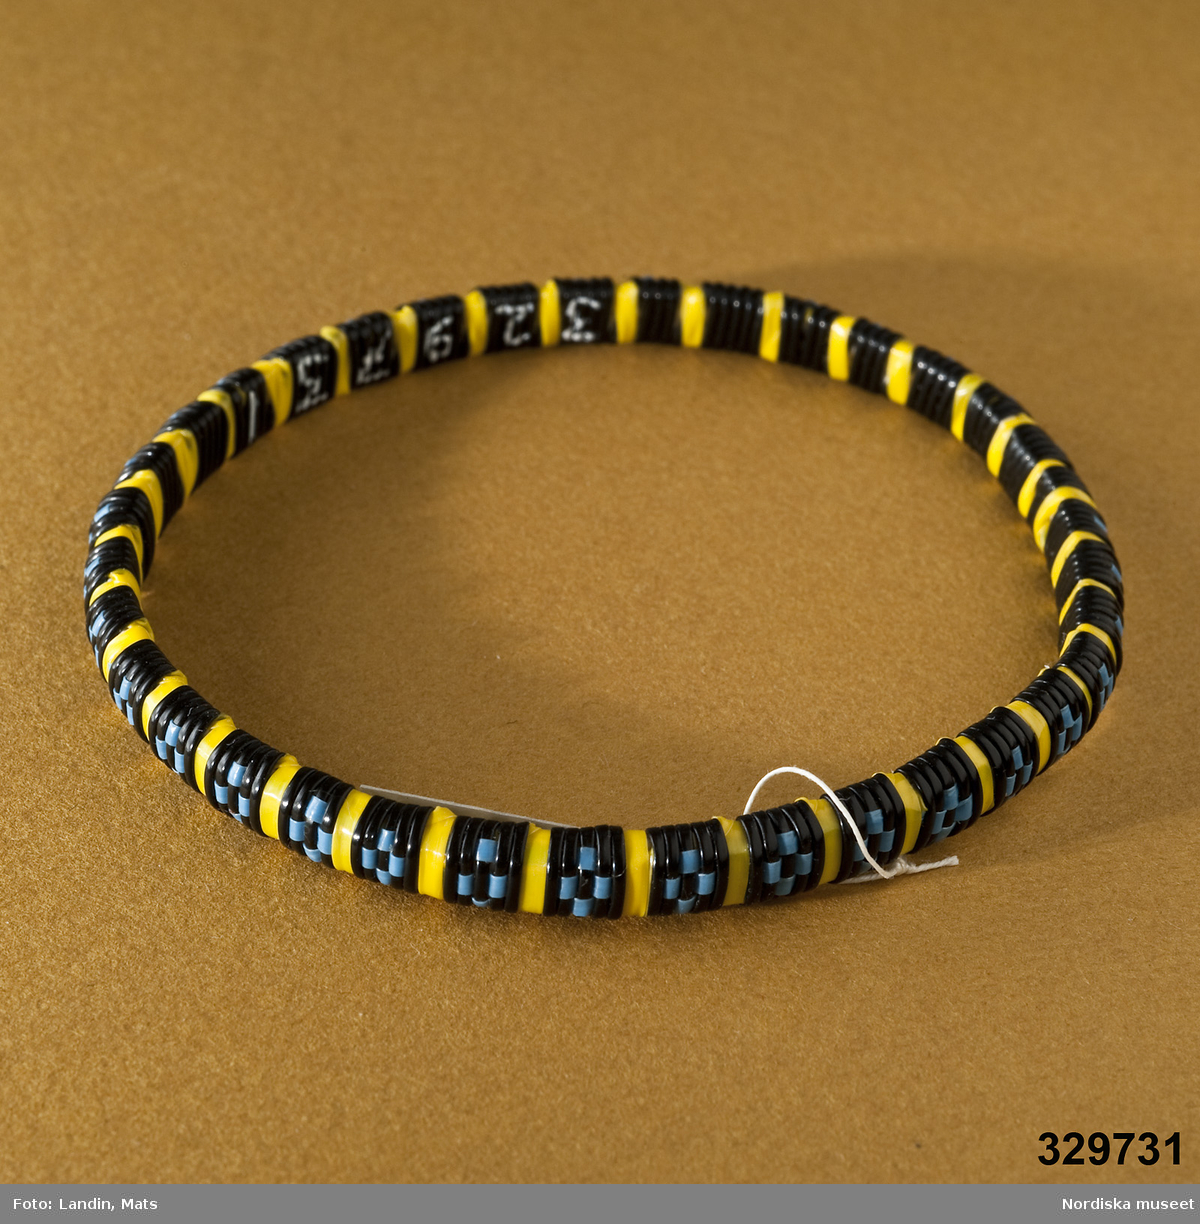 Tvärrandigt runt armband i gult och rutor i blått mot svart botten. Vävt av tunna plastband. Afrikanska influenser.
/Zingoalla Rosenqvist 2009-02-05